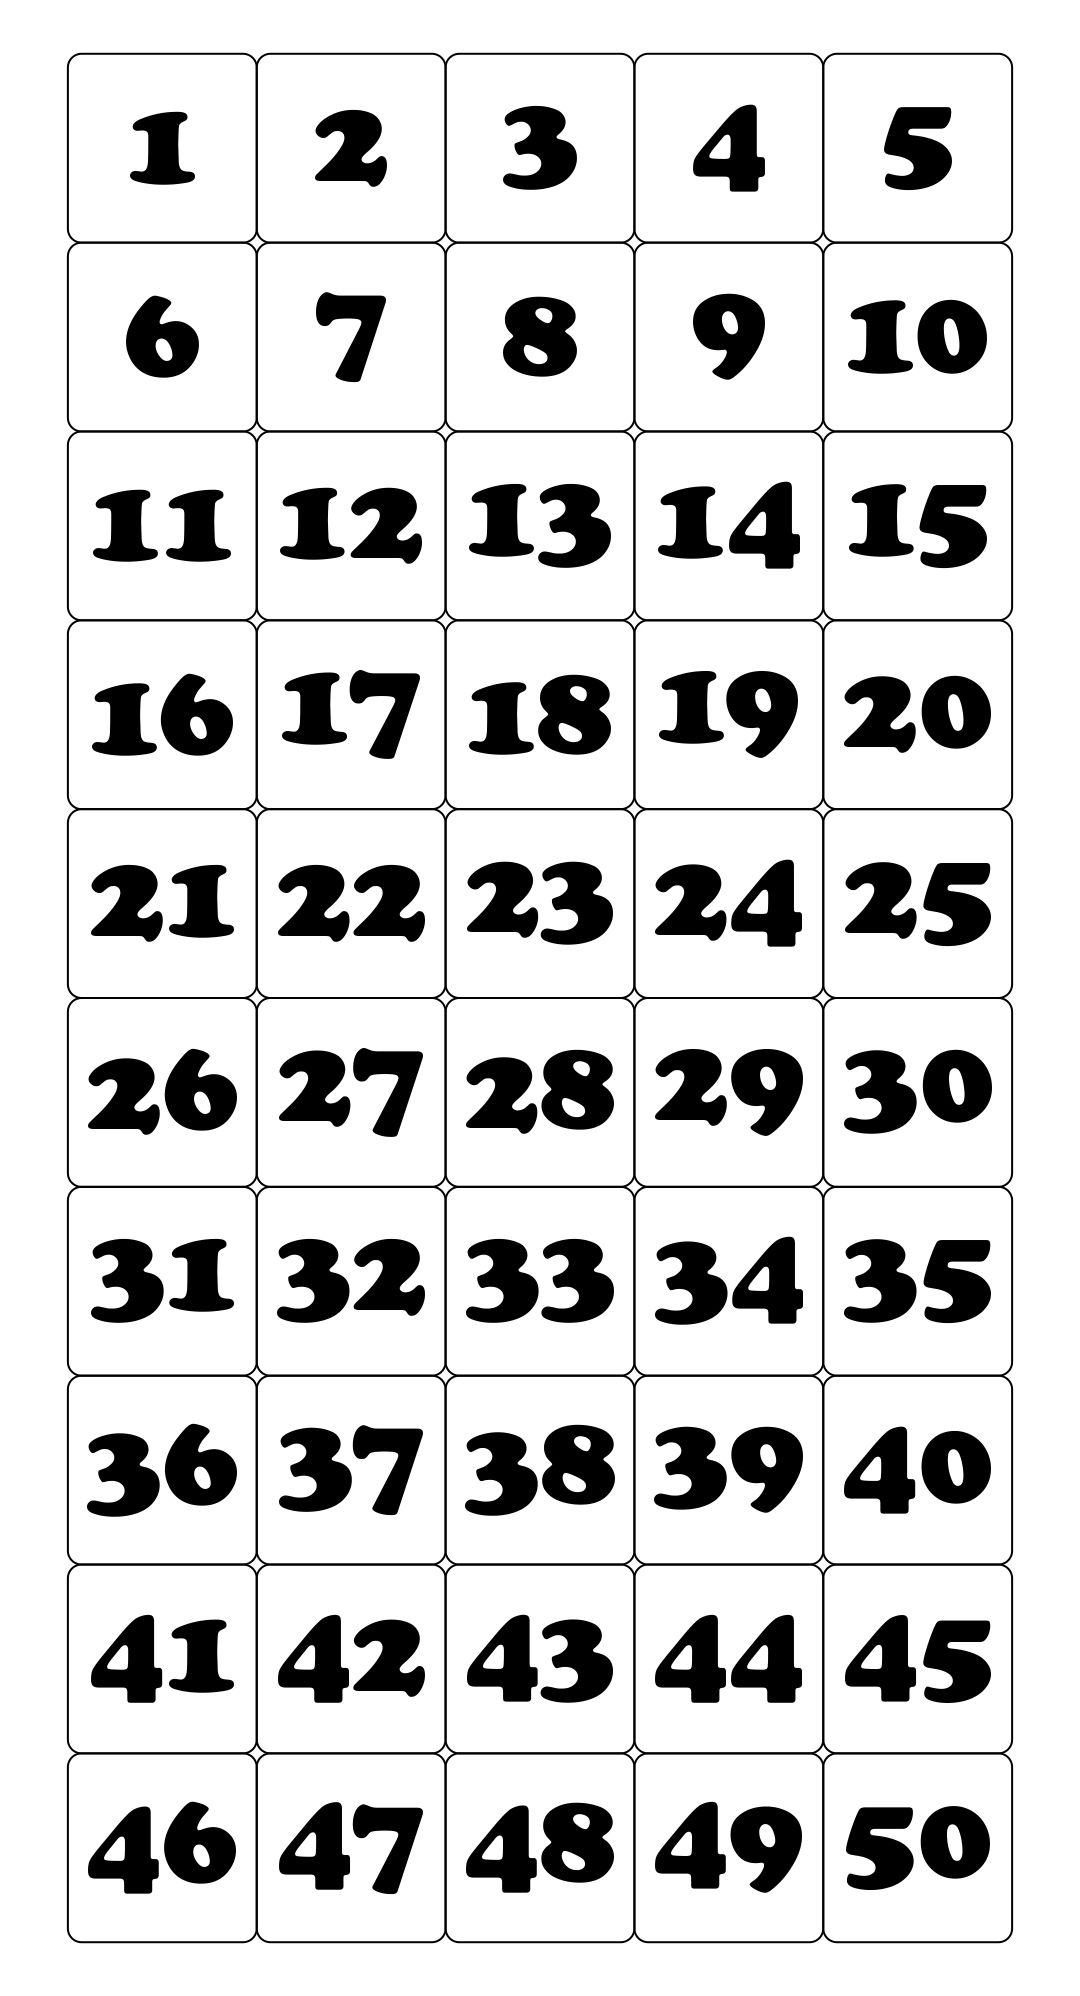 Printable Number Cards 1 50 Printable Numbers Number Grid Free Printable Numbers